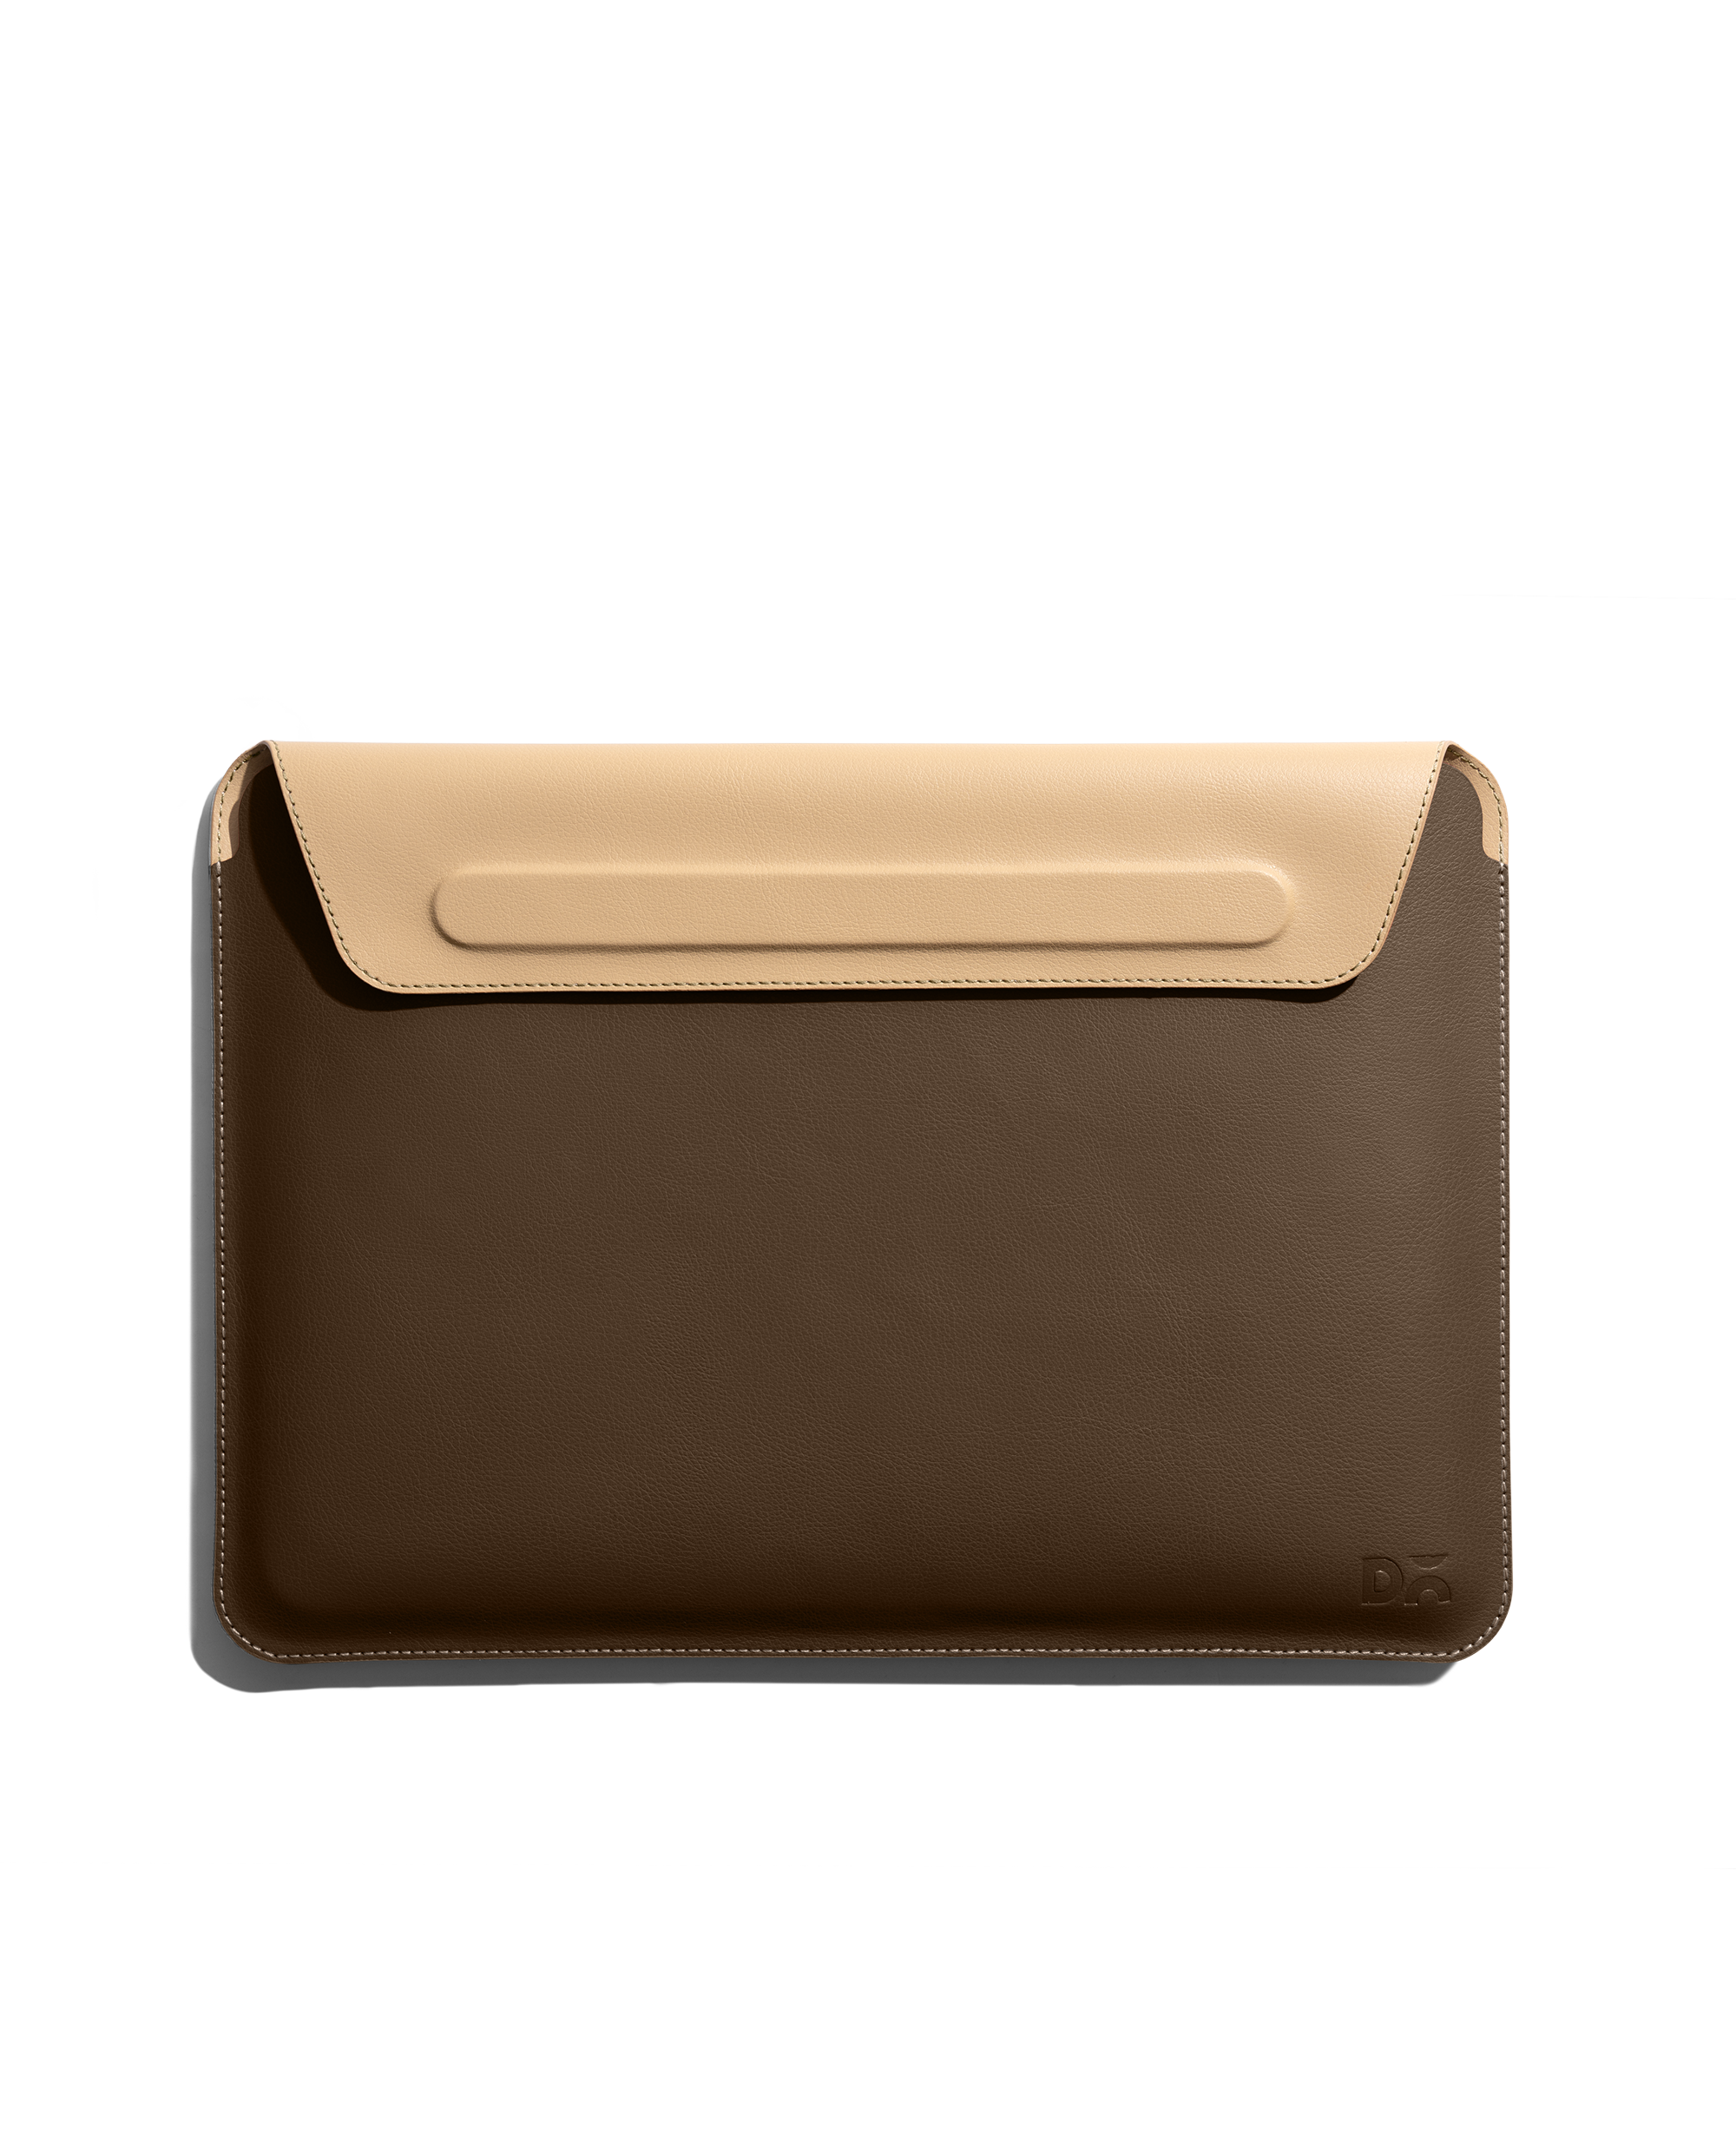 Buy Macbook Air Leather Sleeve  Laptop Zip Folio  Macbook Pro Online in  India  Etsy